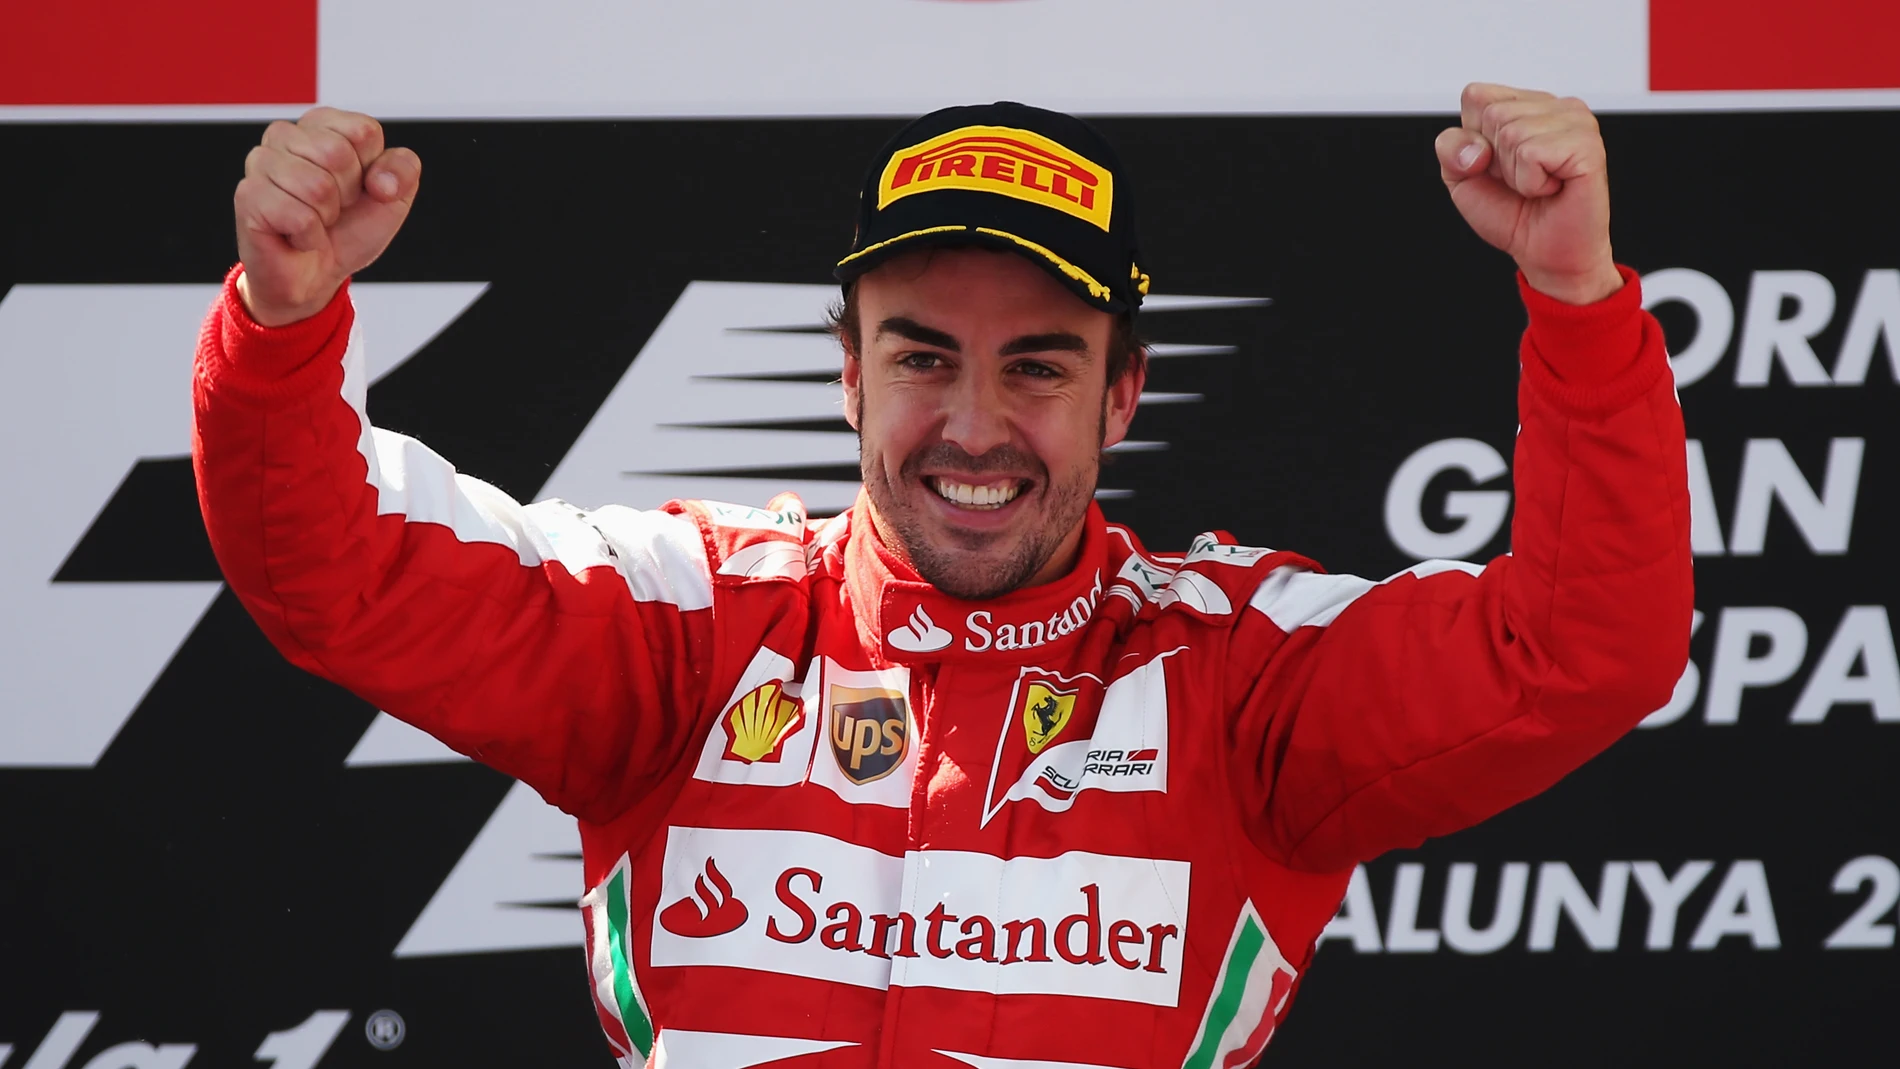 Fernando Alonso celebrando su última victoria en Fórmula 1